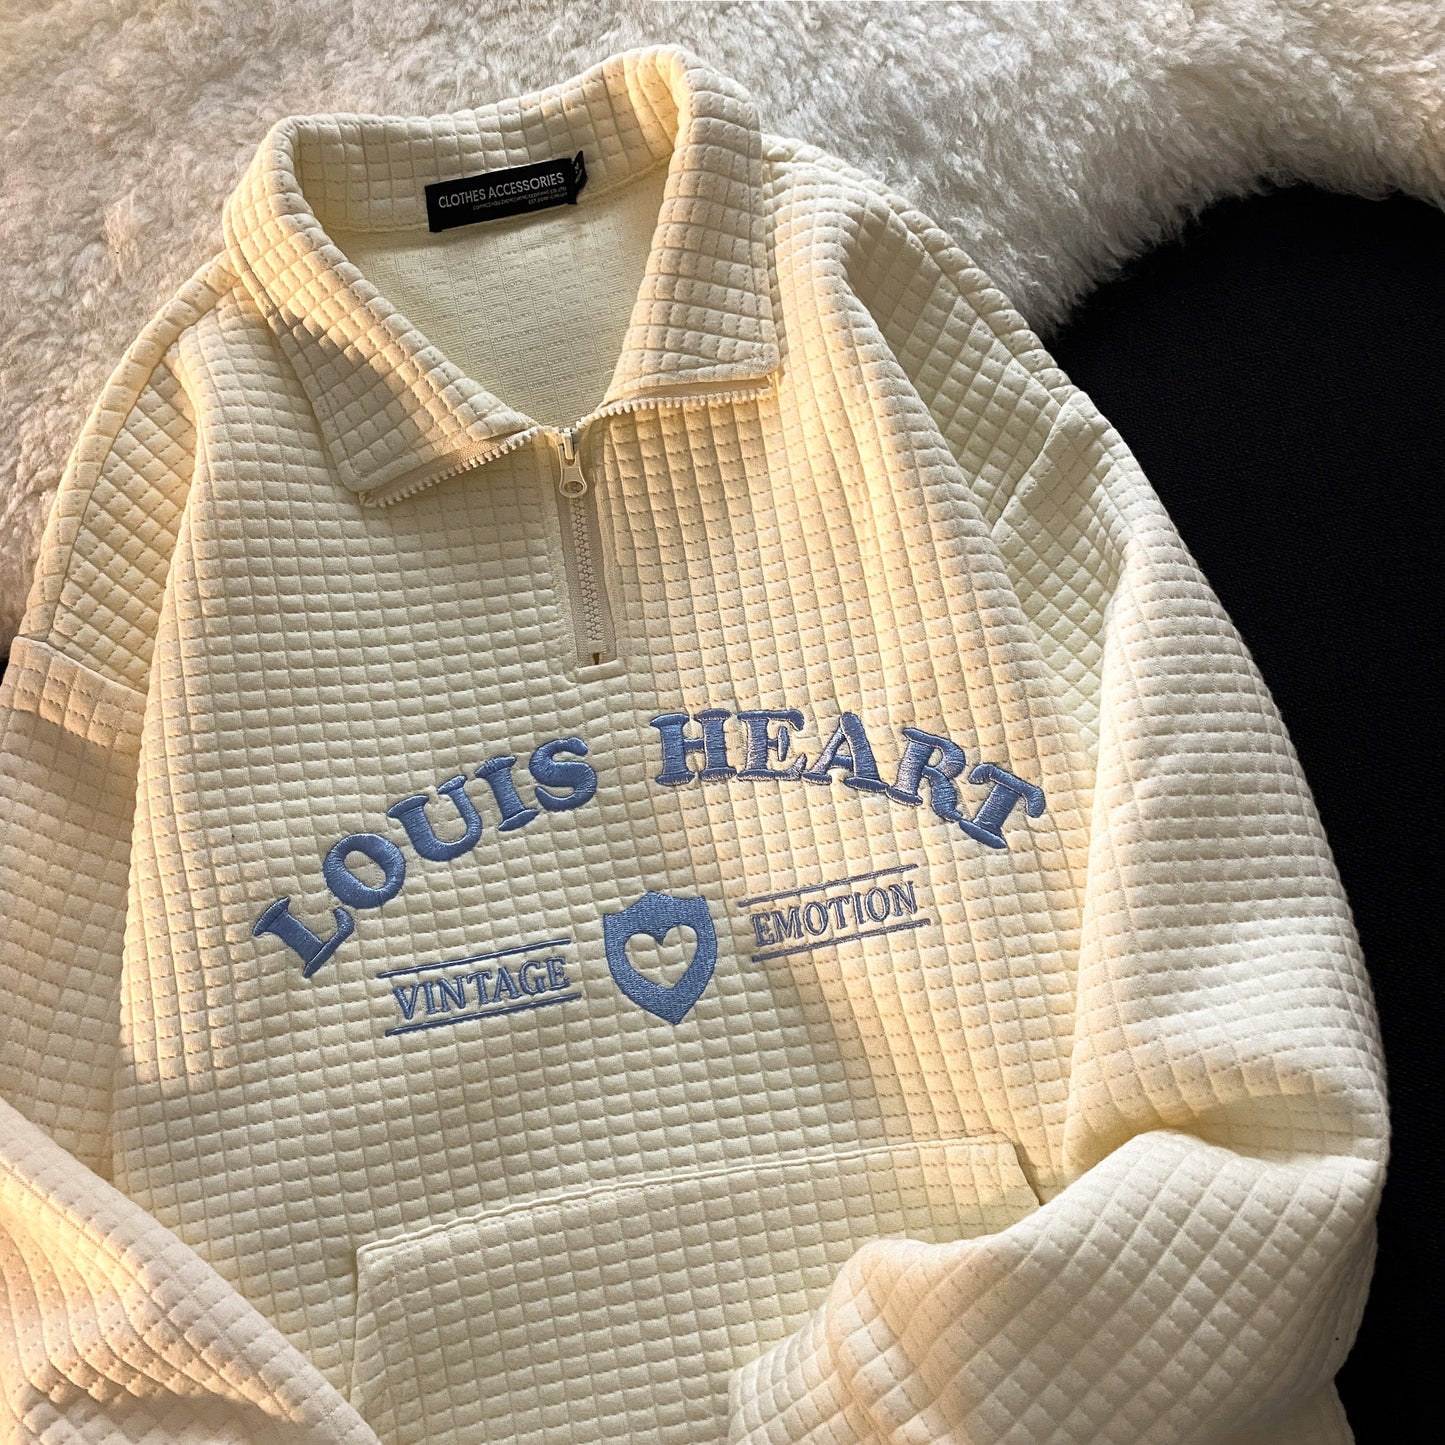 Louis Heart Sweater